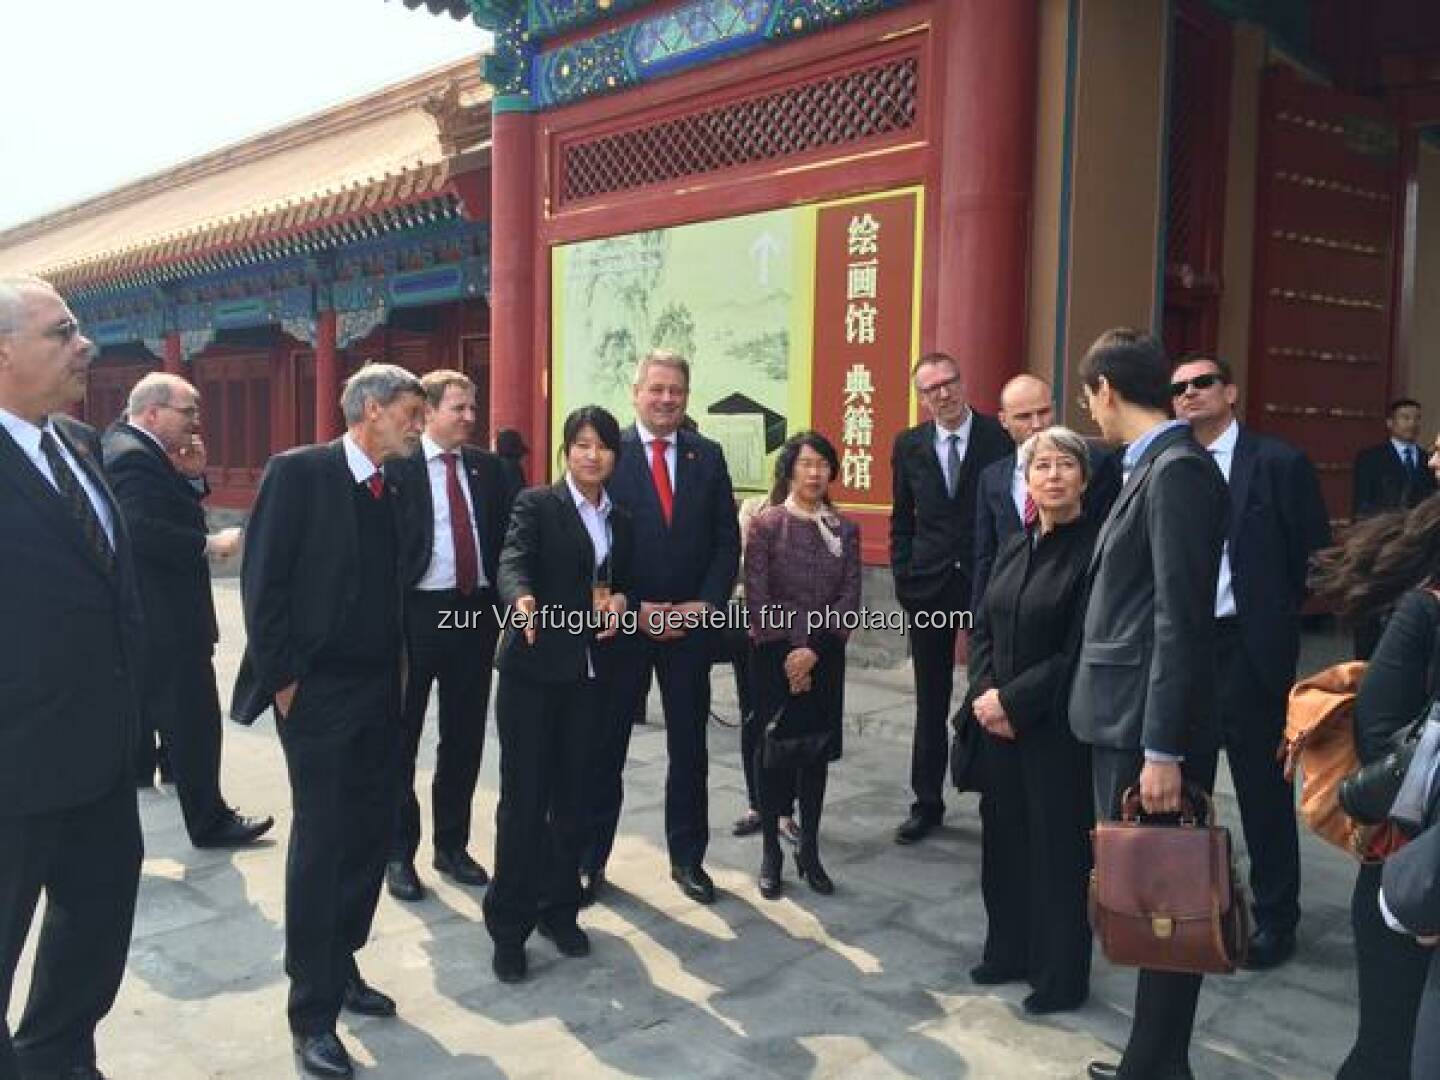 #China: Margit Fischer besichtigt mit 2 Bundesministern und Firmenvertretern die verbotene Stadt in Peking http://twitter.com/wko_aw/status/581367961384009729/photo/1  Source: http://twitter.com/wko_aw